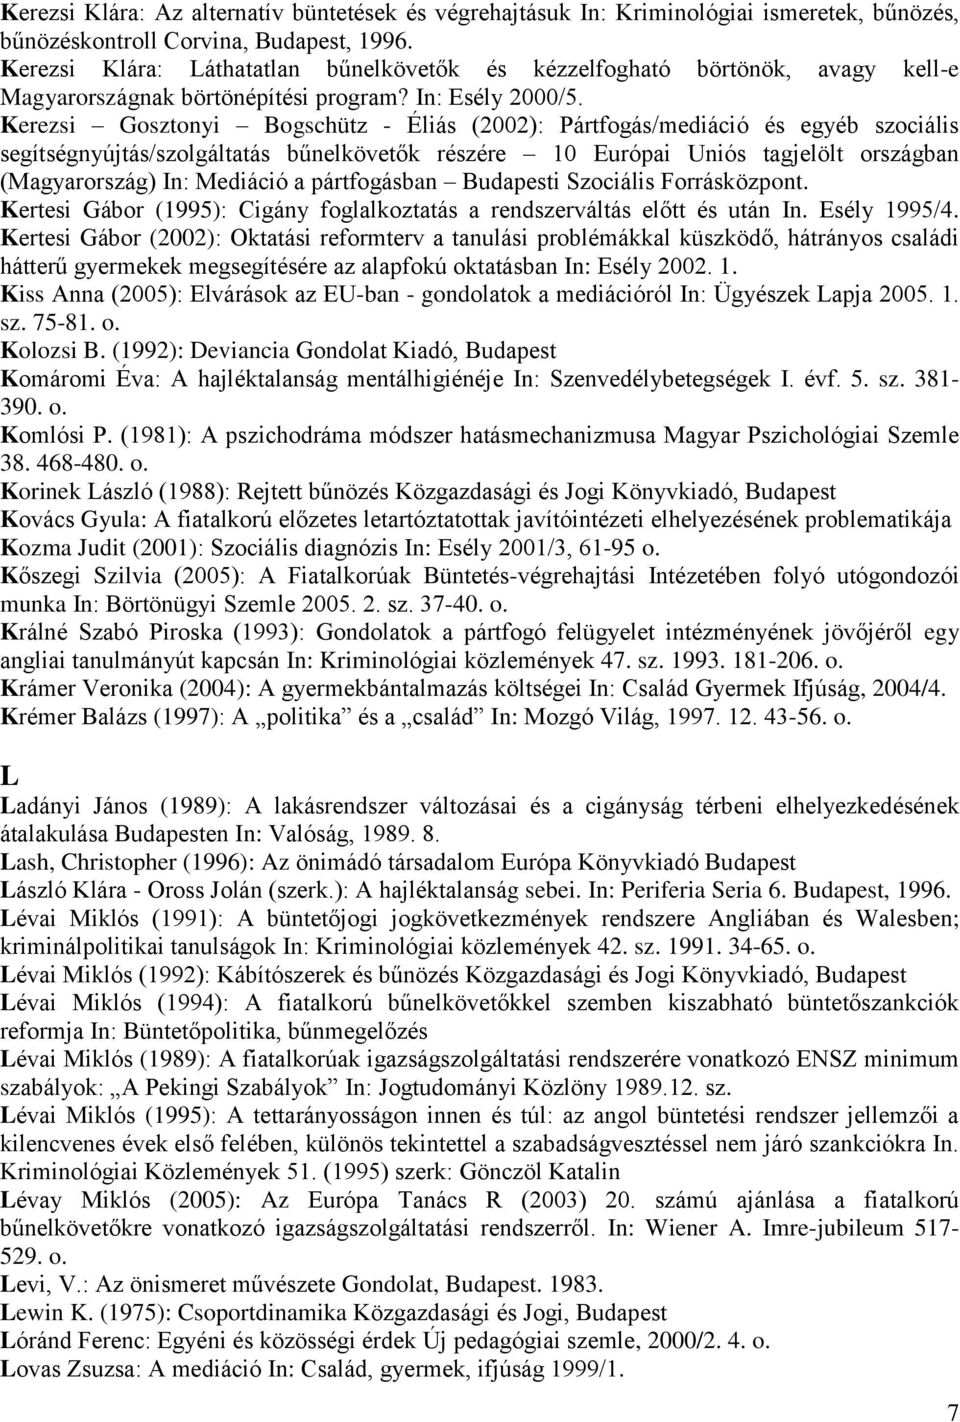 Kerezsi Gosztonyi Bogschütz - Éliás (2002): Pártfogás/mediáció és egyéb szociális segítségnyújtás/szolgáltatás bűnelkövetők részére 10 Európai Uniós tagjelölt országban (Magyarország) In: Mediáció a